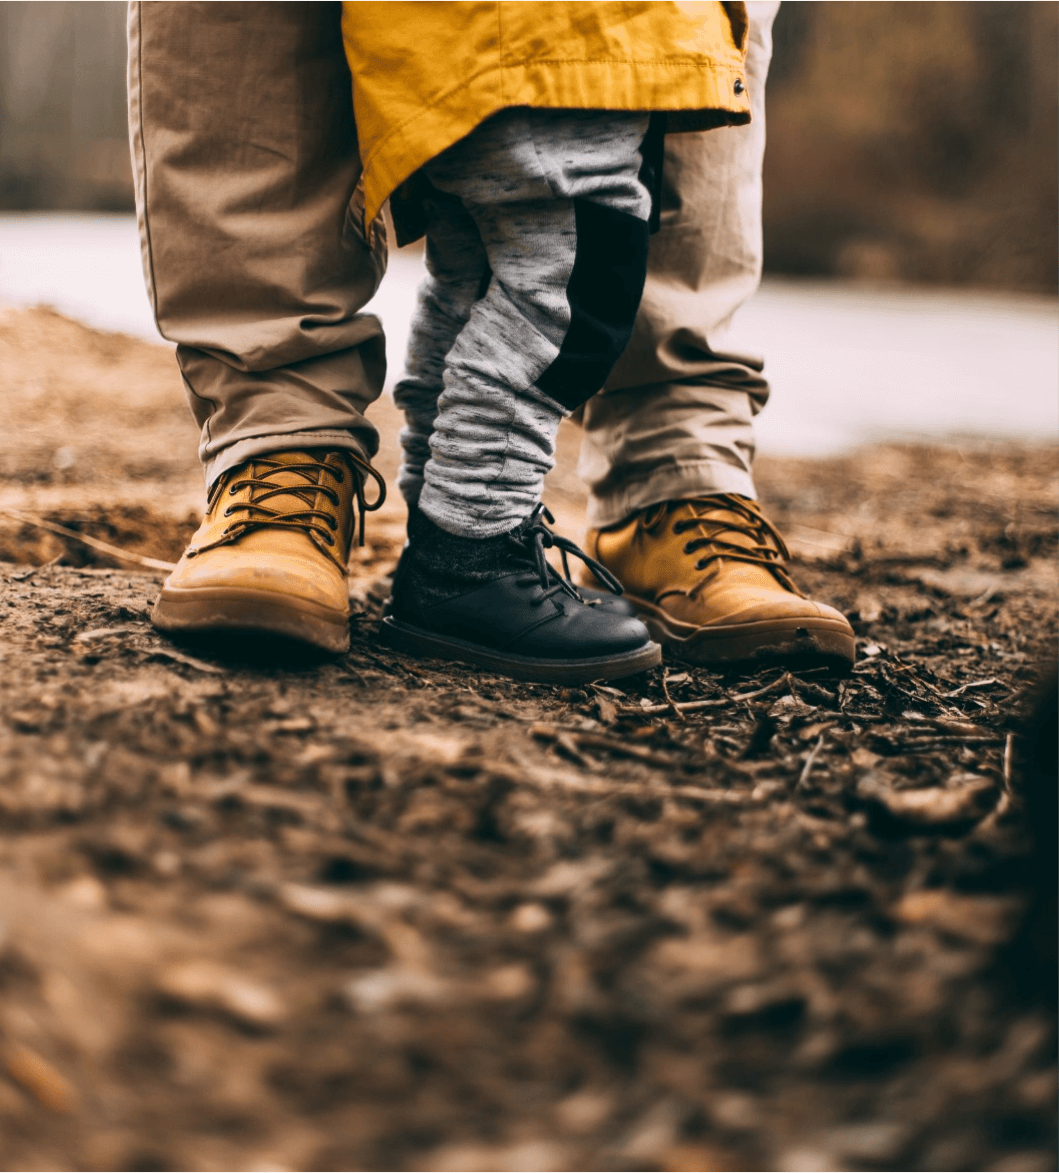 Derecho de familia: podemos ver las piernas de un padre con su hijo-a